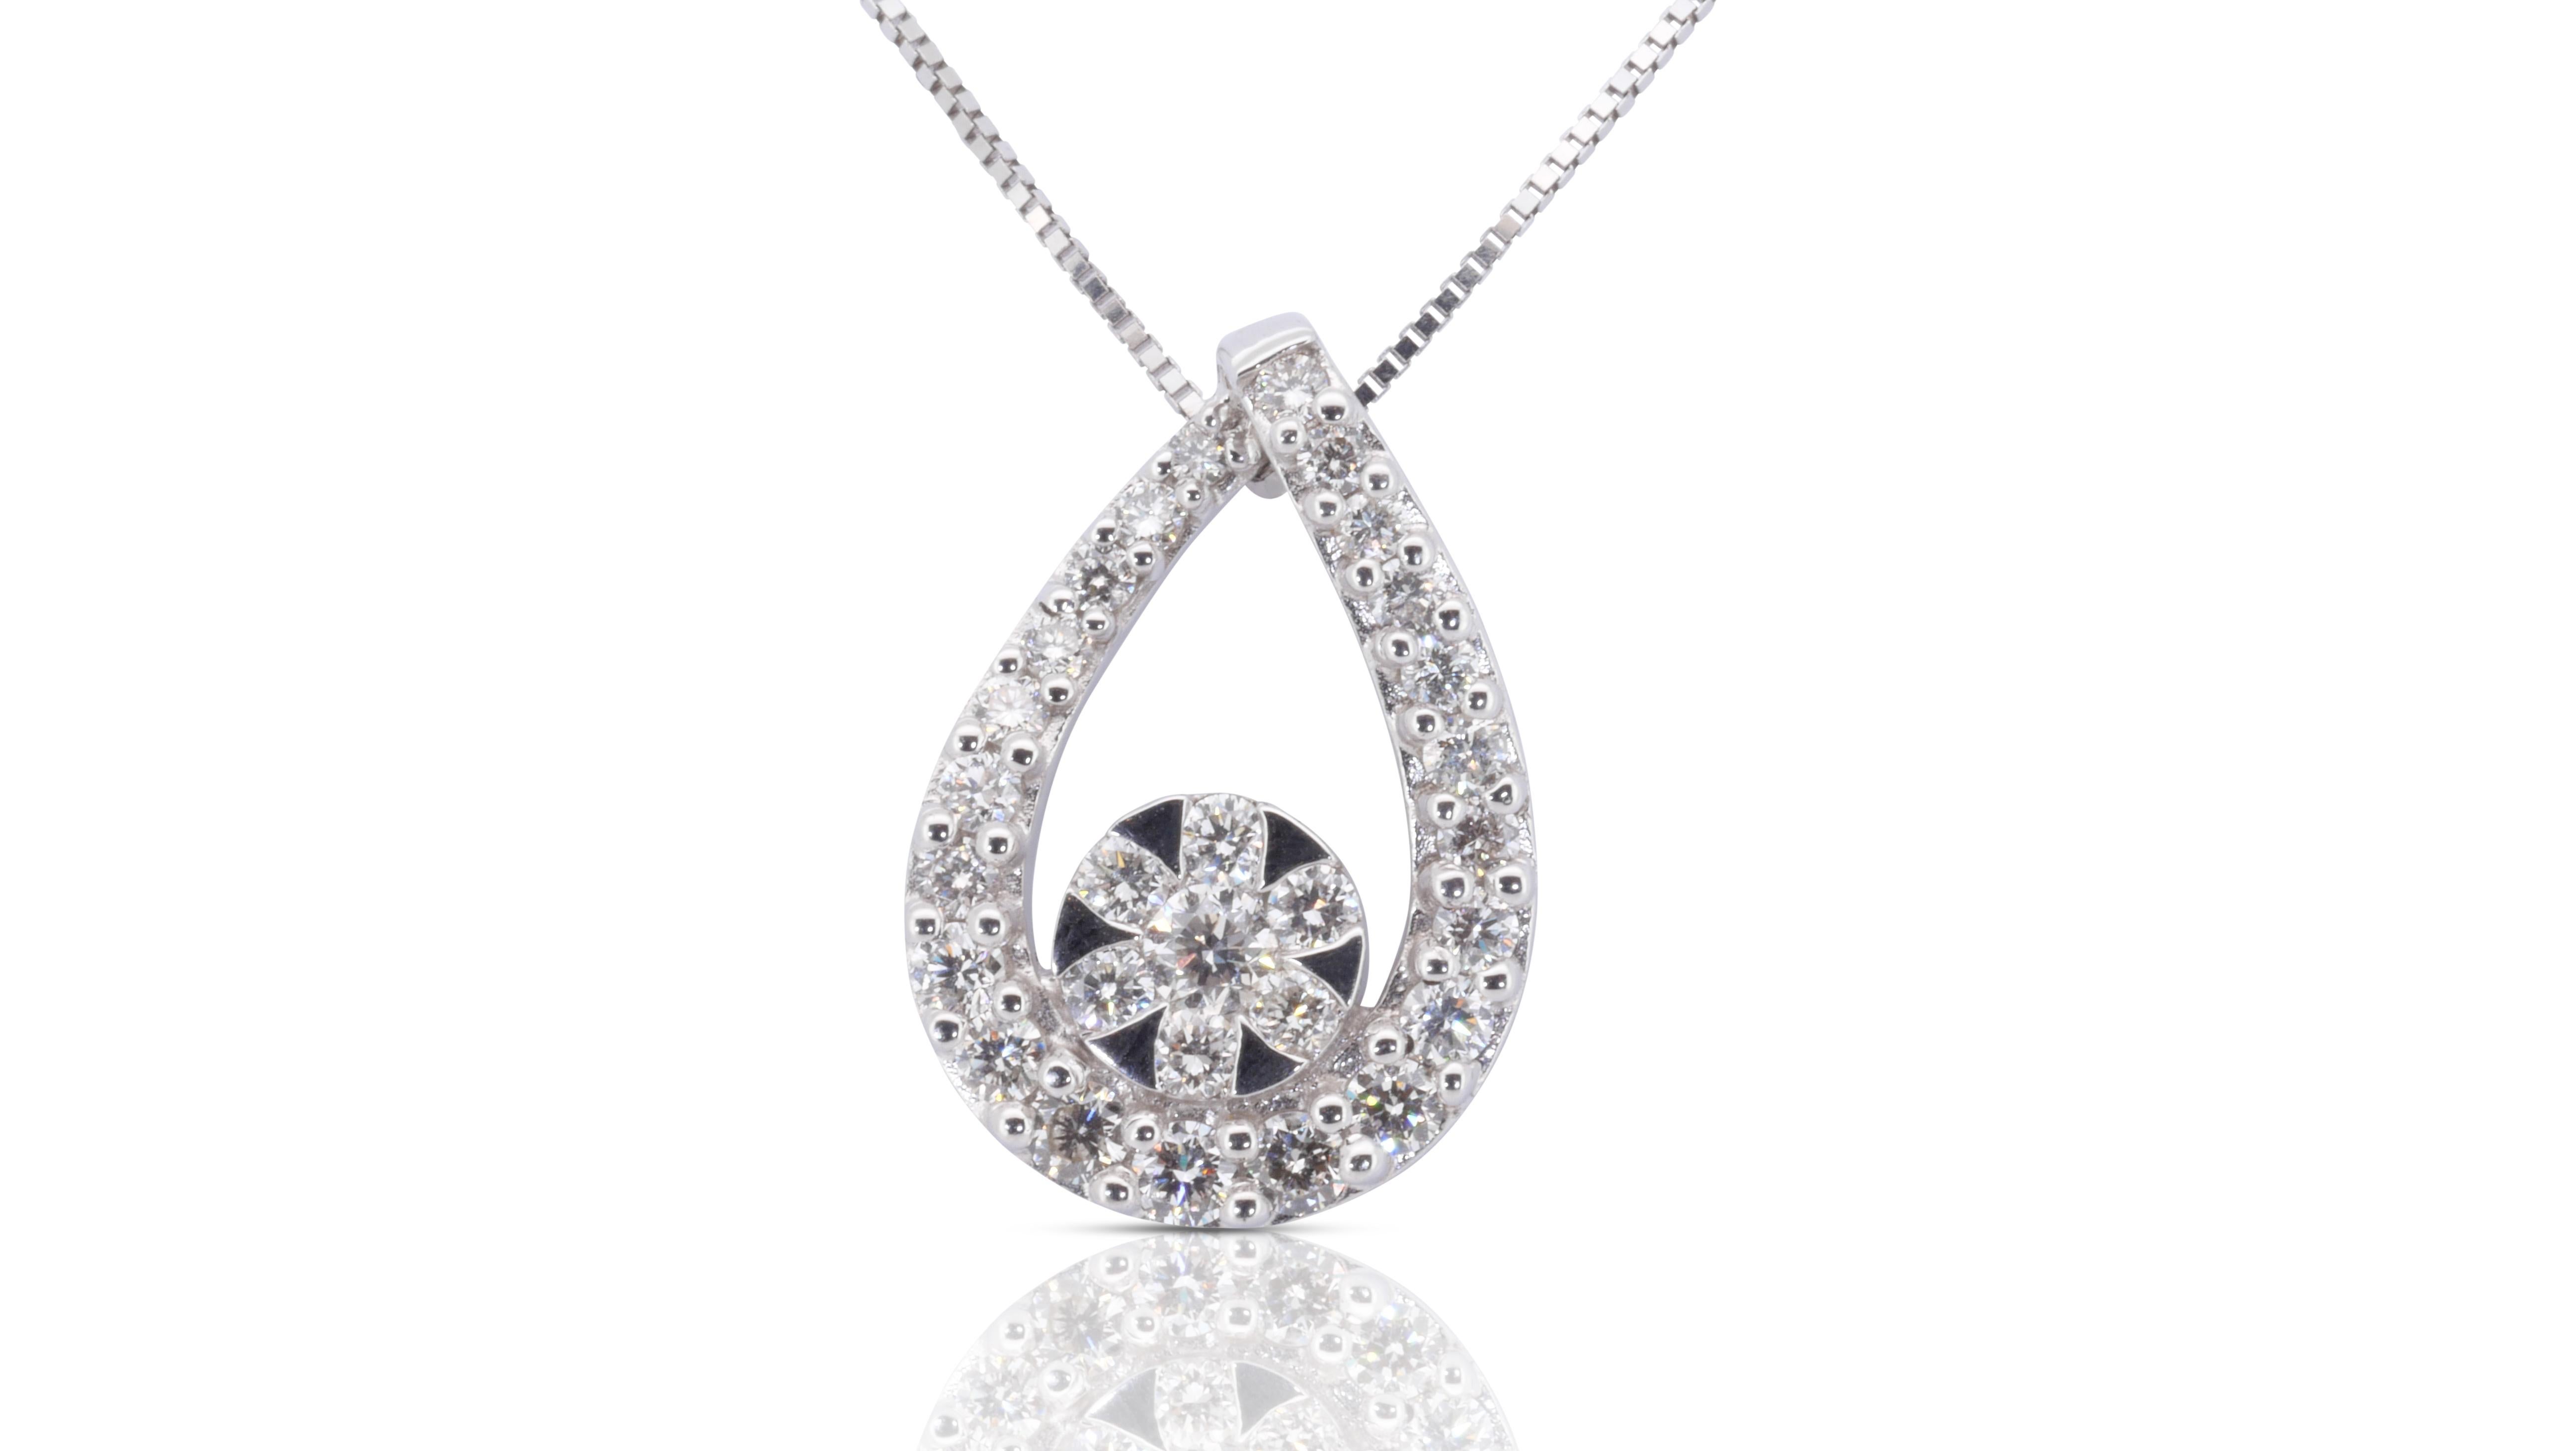 Un magnifique pendentif orné d'un éblouissant diamant naturel de 0,98 carat de forme ronde et brillante. Elle possède 0.05 carat de diamants latéraux qui ajoutent encore à son élégance. Le bijou est fabriqué en or blanc 9 carats avec un polissage de